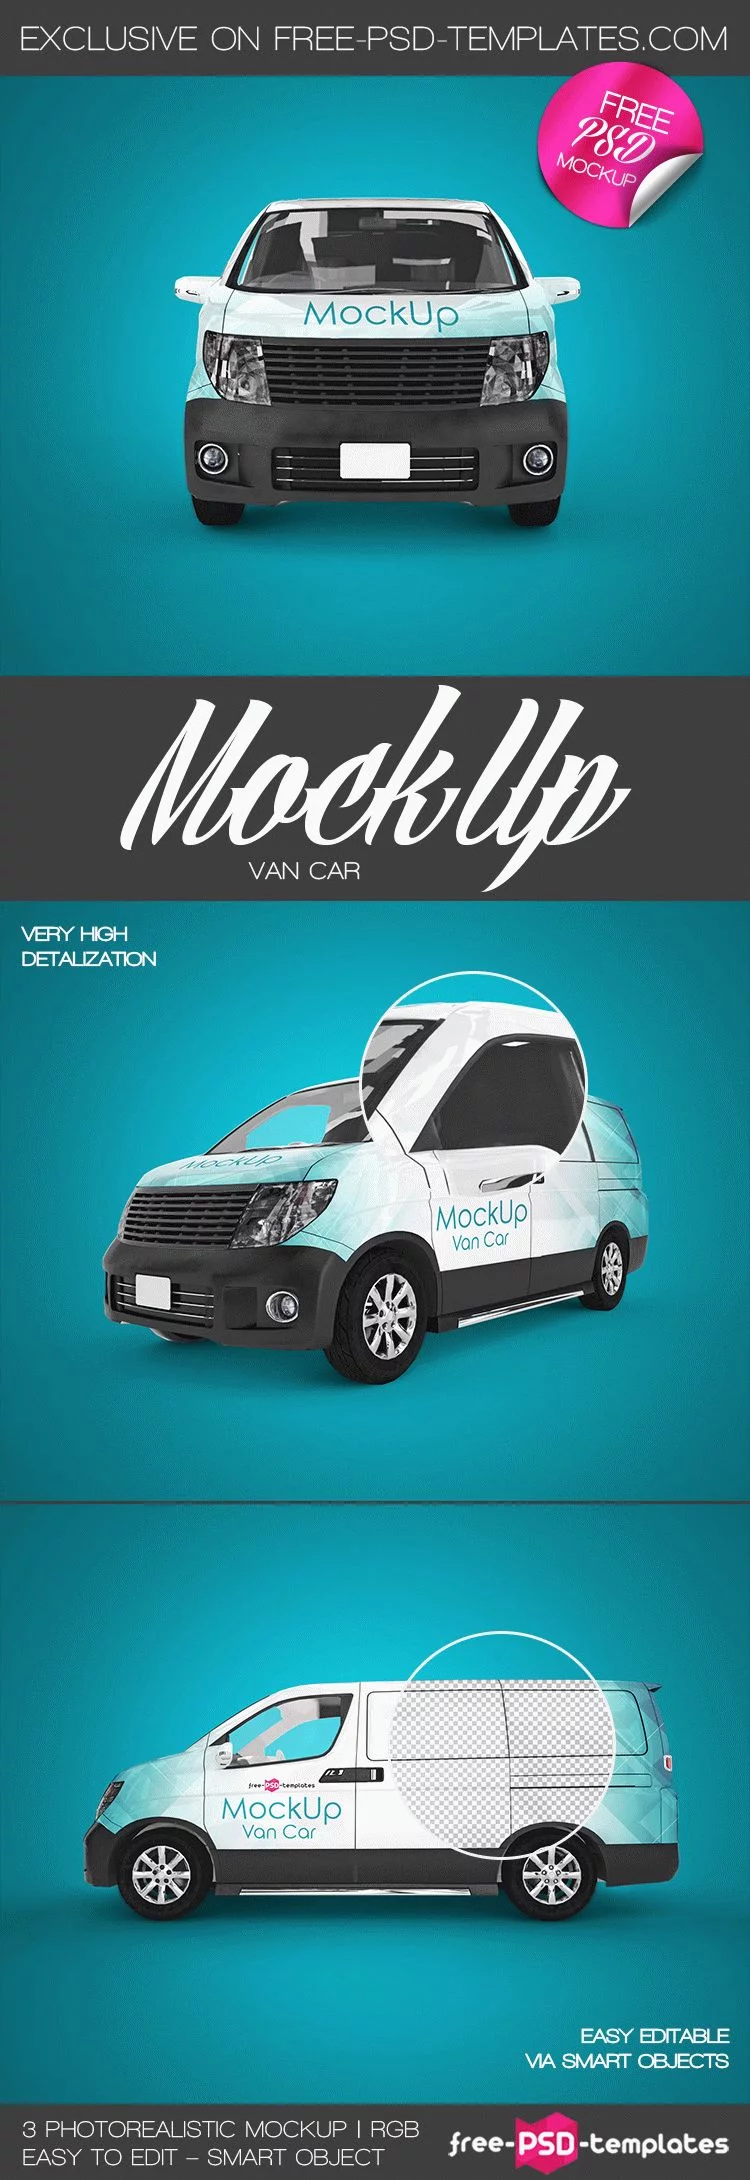 3 Free Van Car Mockup in PSD